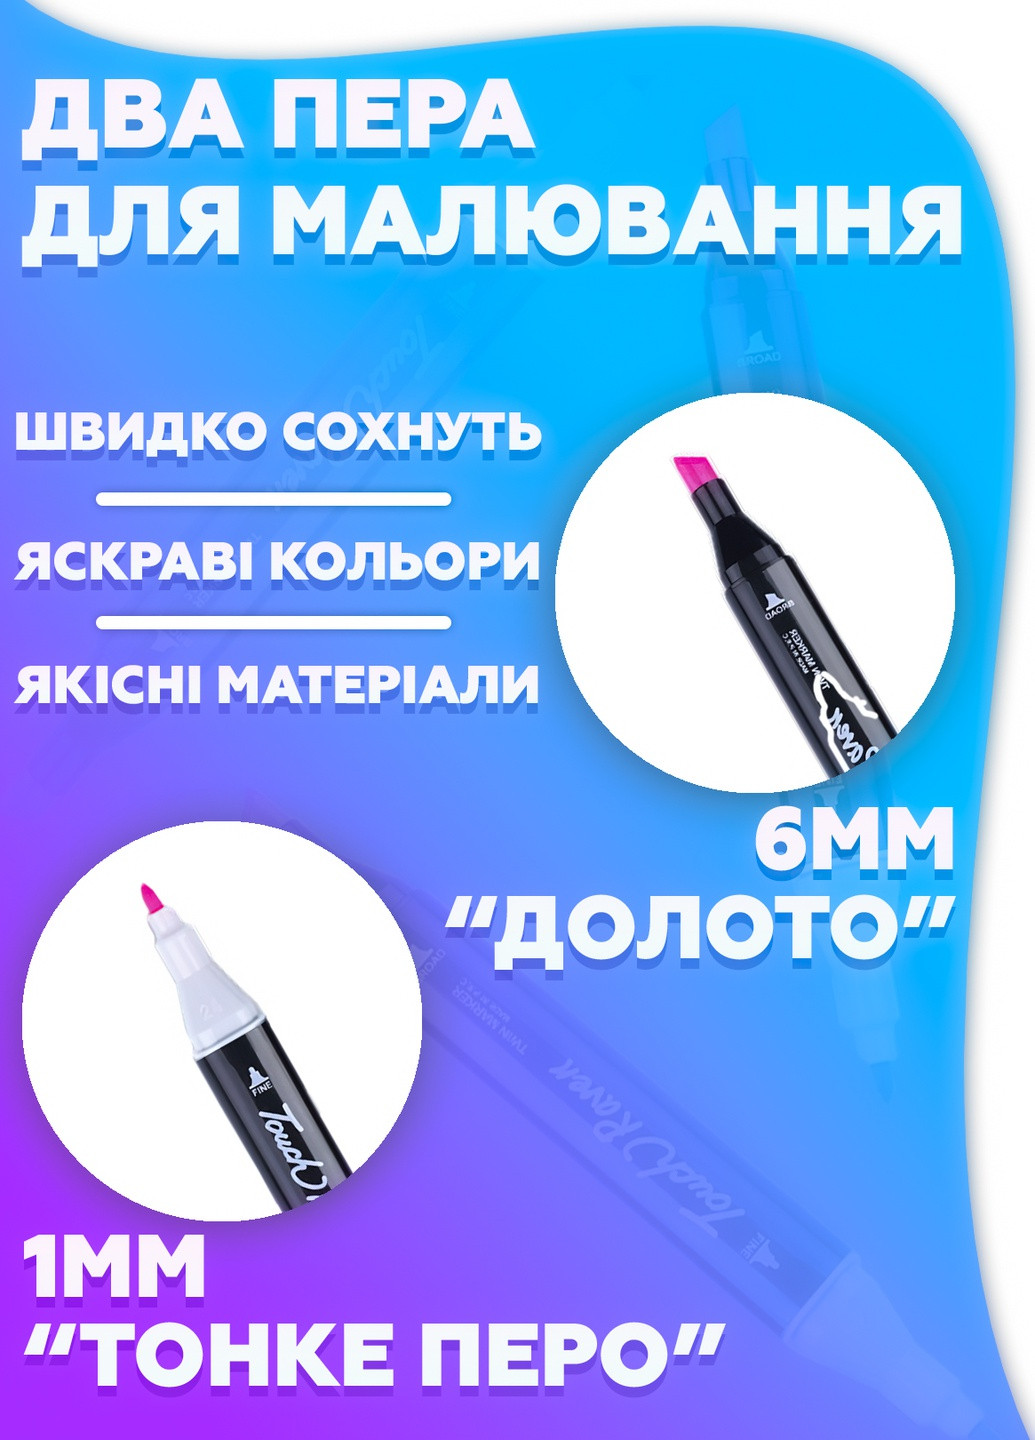 Набор профессиональных двусторонних маркеров для скетчинга Touch Yuze 48 цветов в чехле / маркеры для рисования DobraMAMA (252365145)